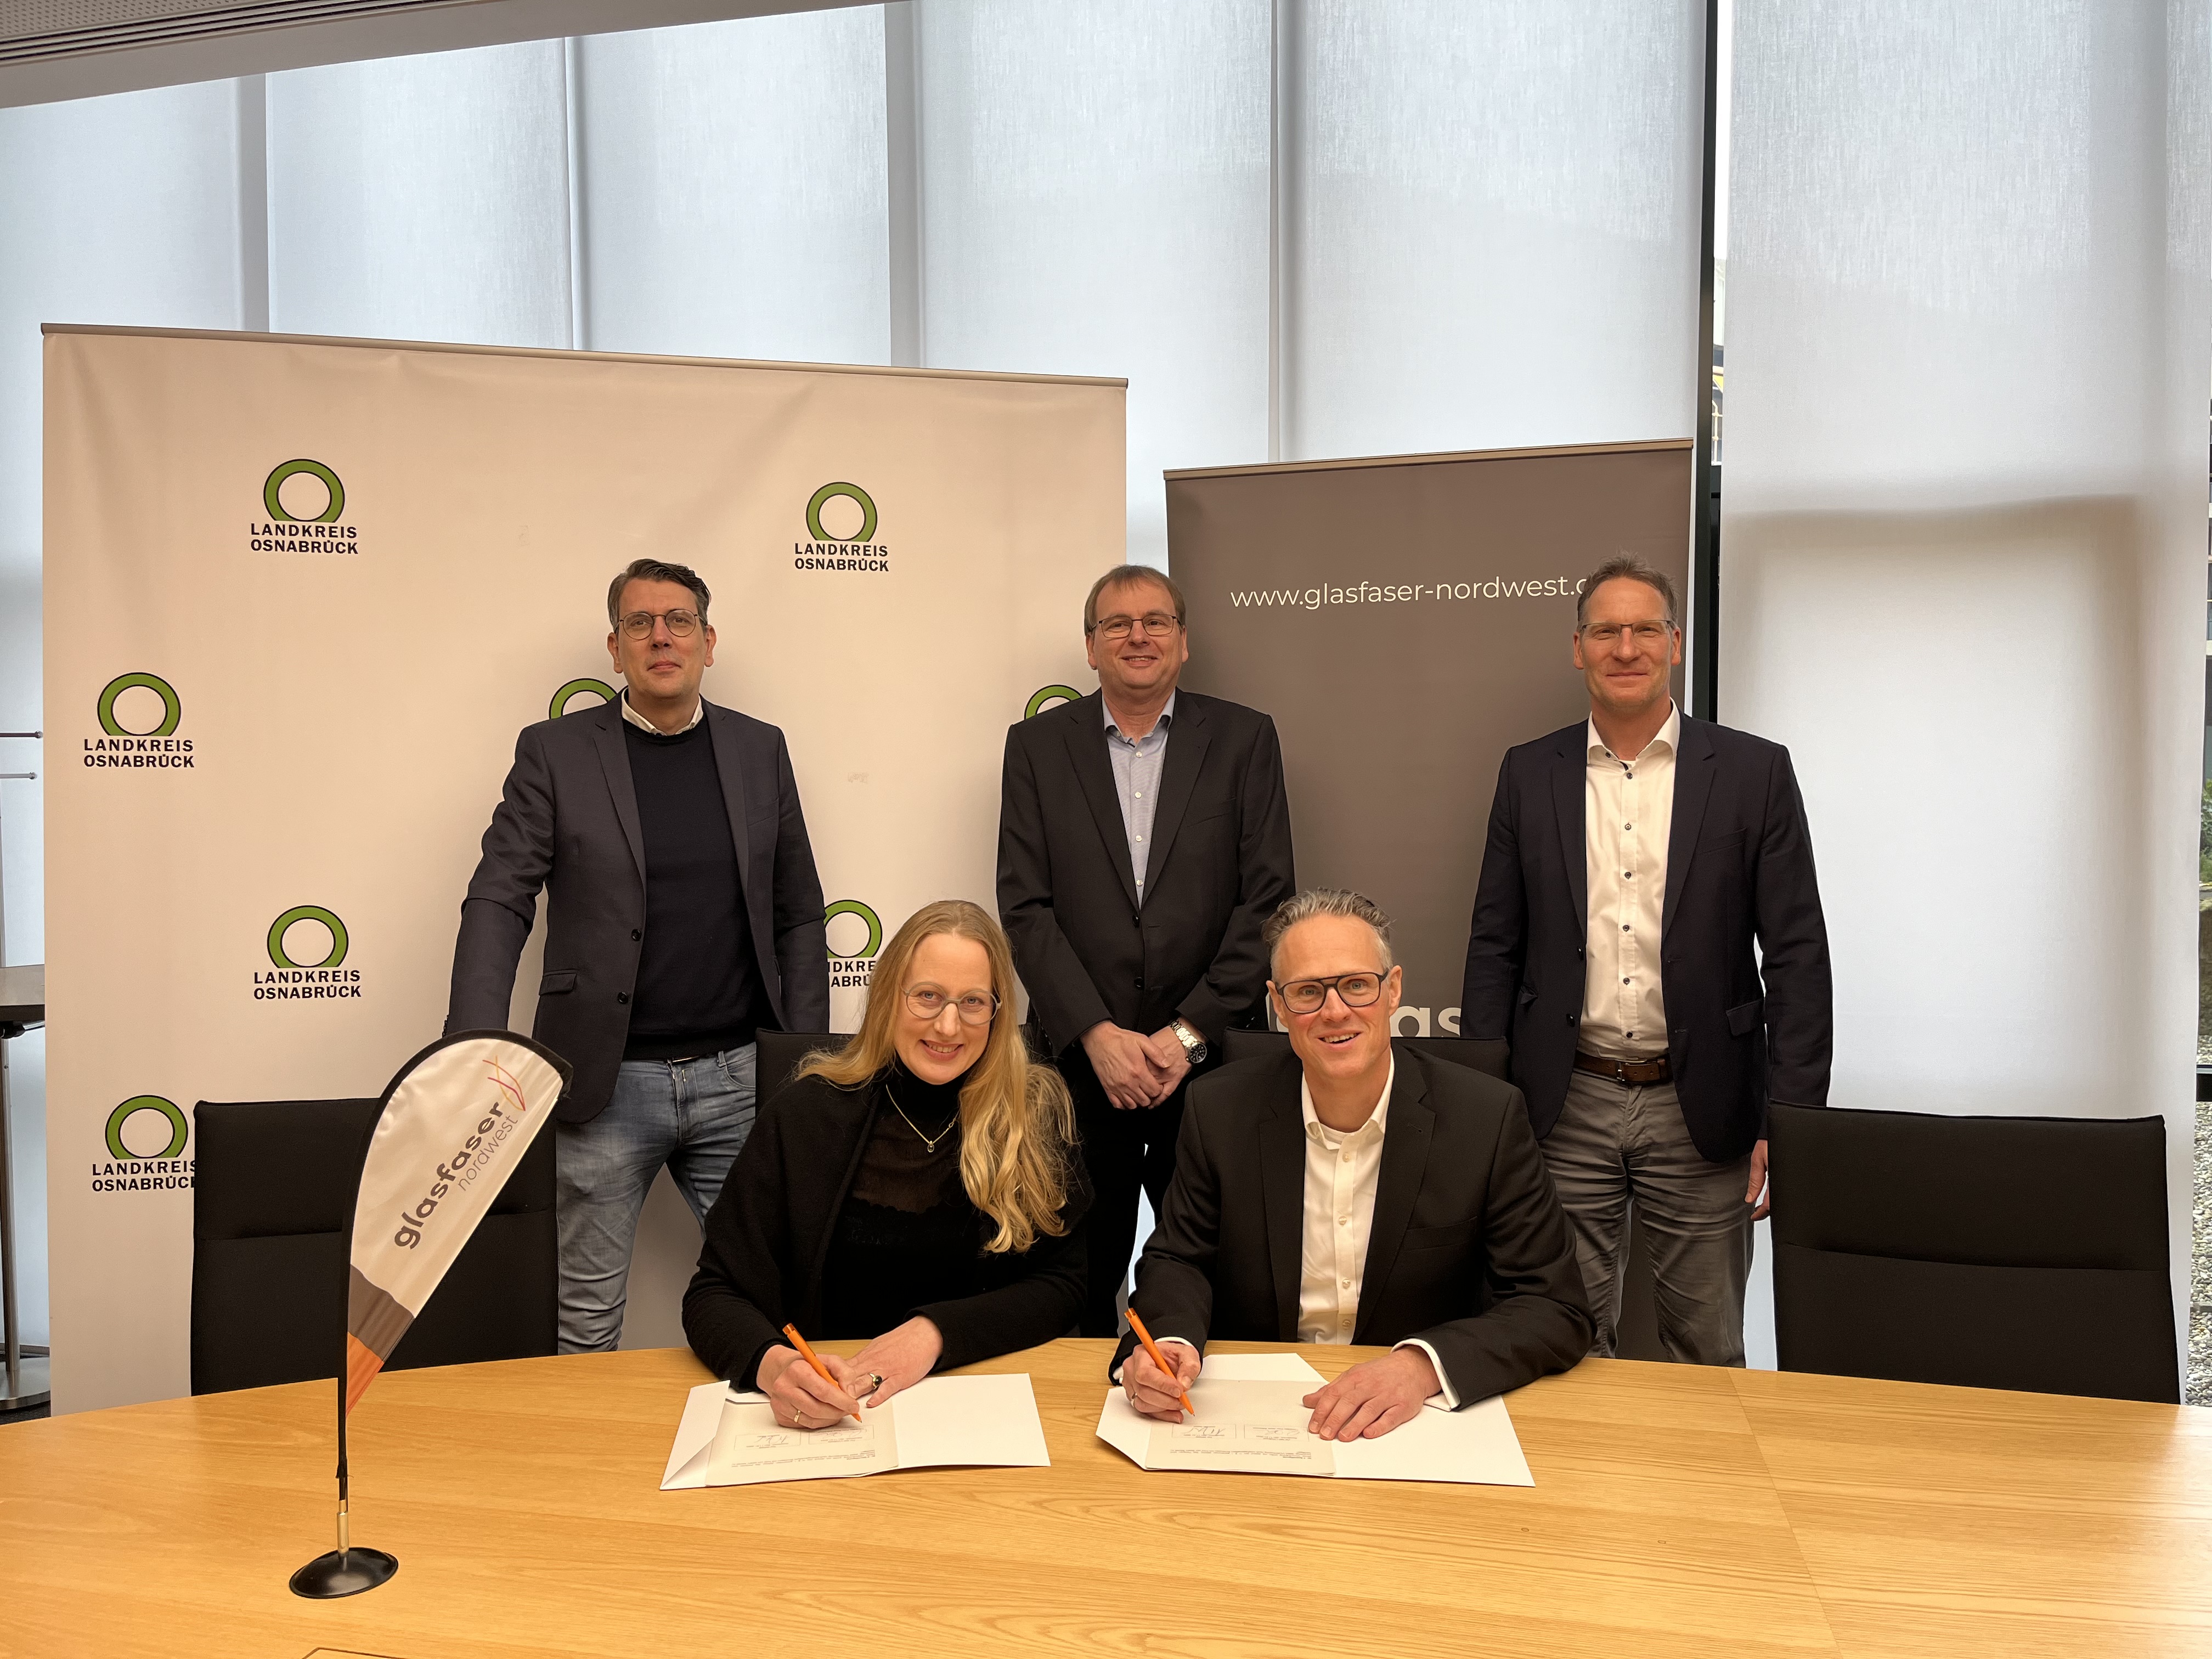 Landrätin Anna Kebschull und Andreas Mayer, Geschäftsführer von Glasfaser Nordwest, bei der Unterzeichnung des Kooperationsvertrags. (Foto: Landkreis Osnabrück)